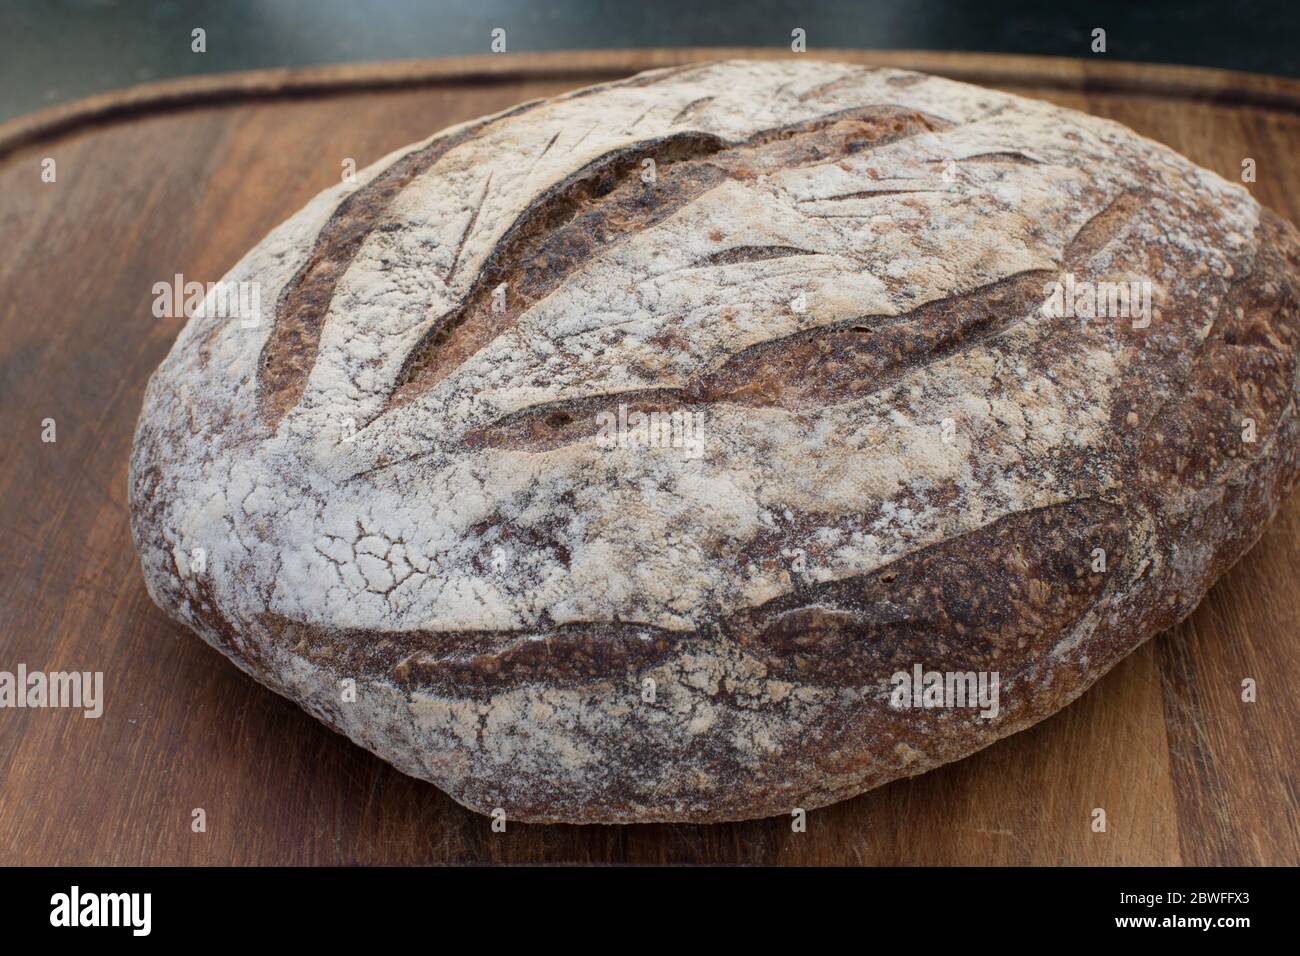 A loaf of sourdough bread on a teak breadboard Stock Photo